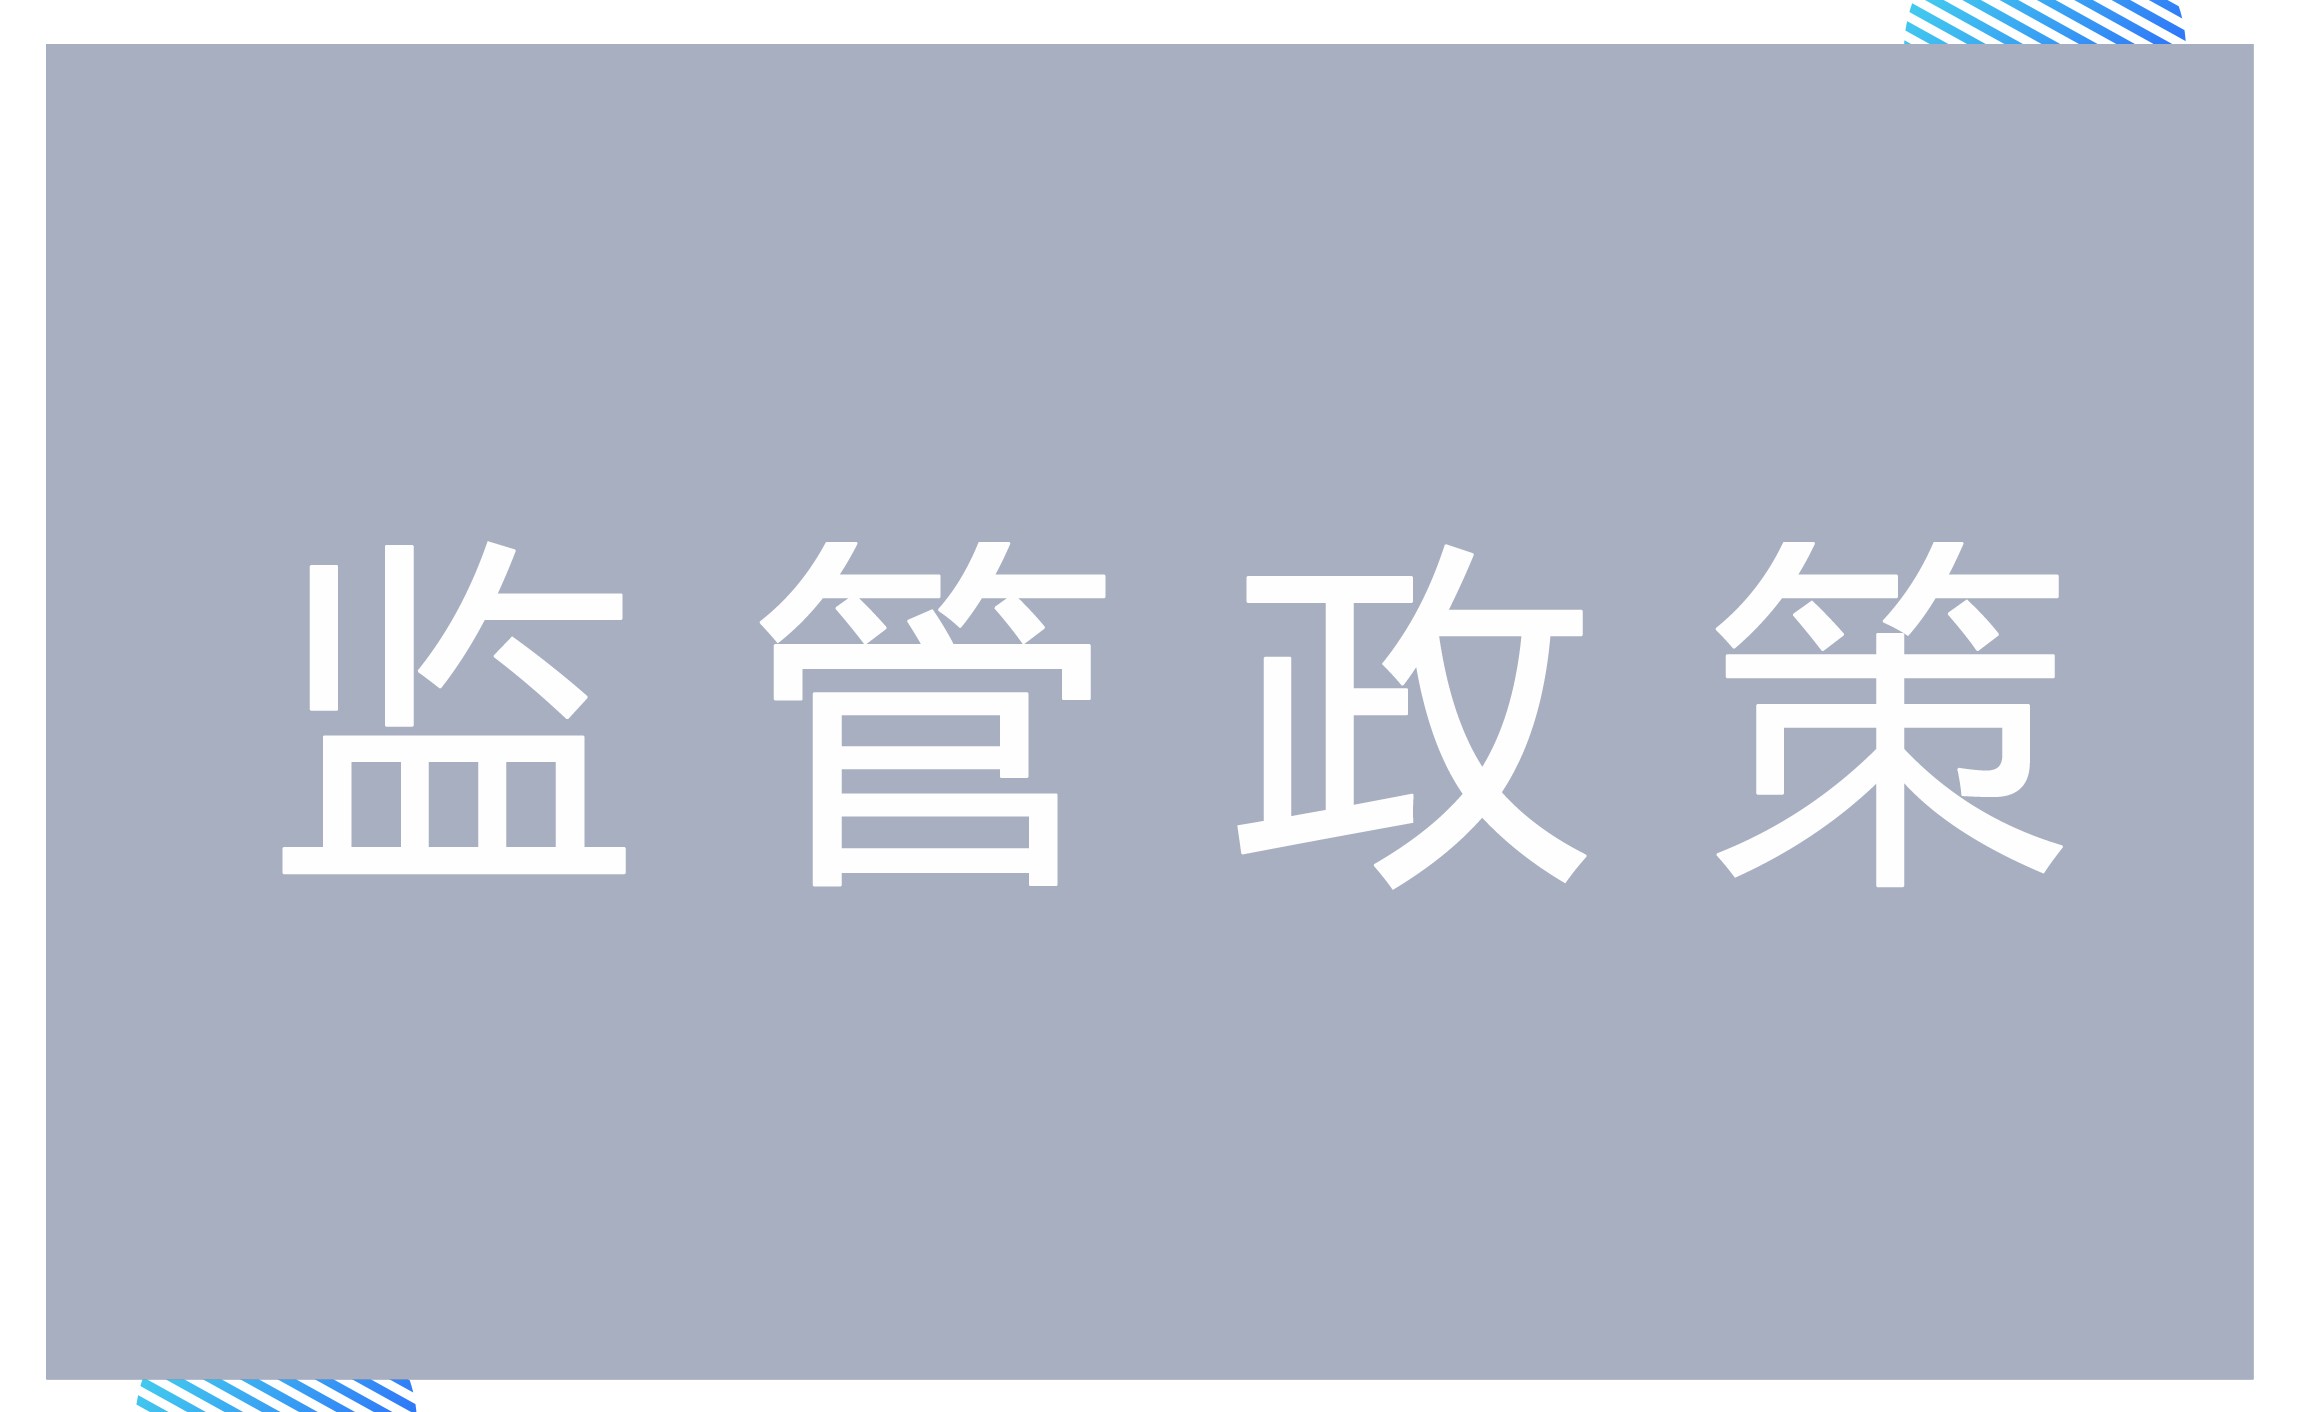 重庆市商业保理公司监管评级和分类监管办法（征求意见稿）